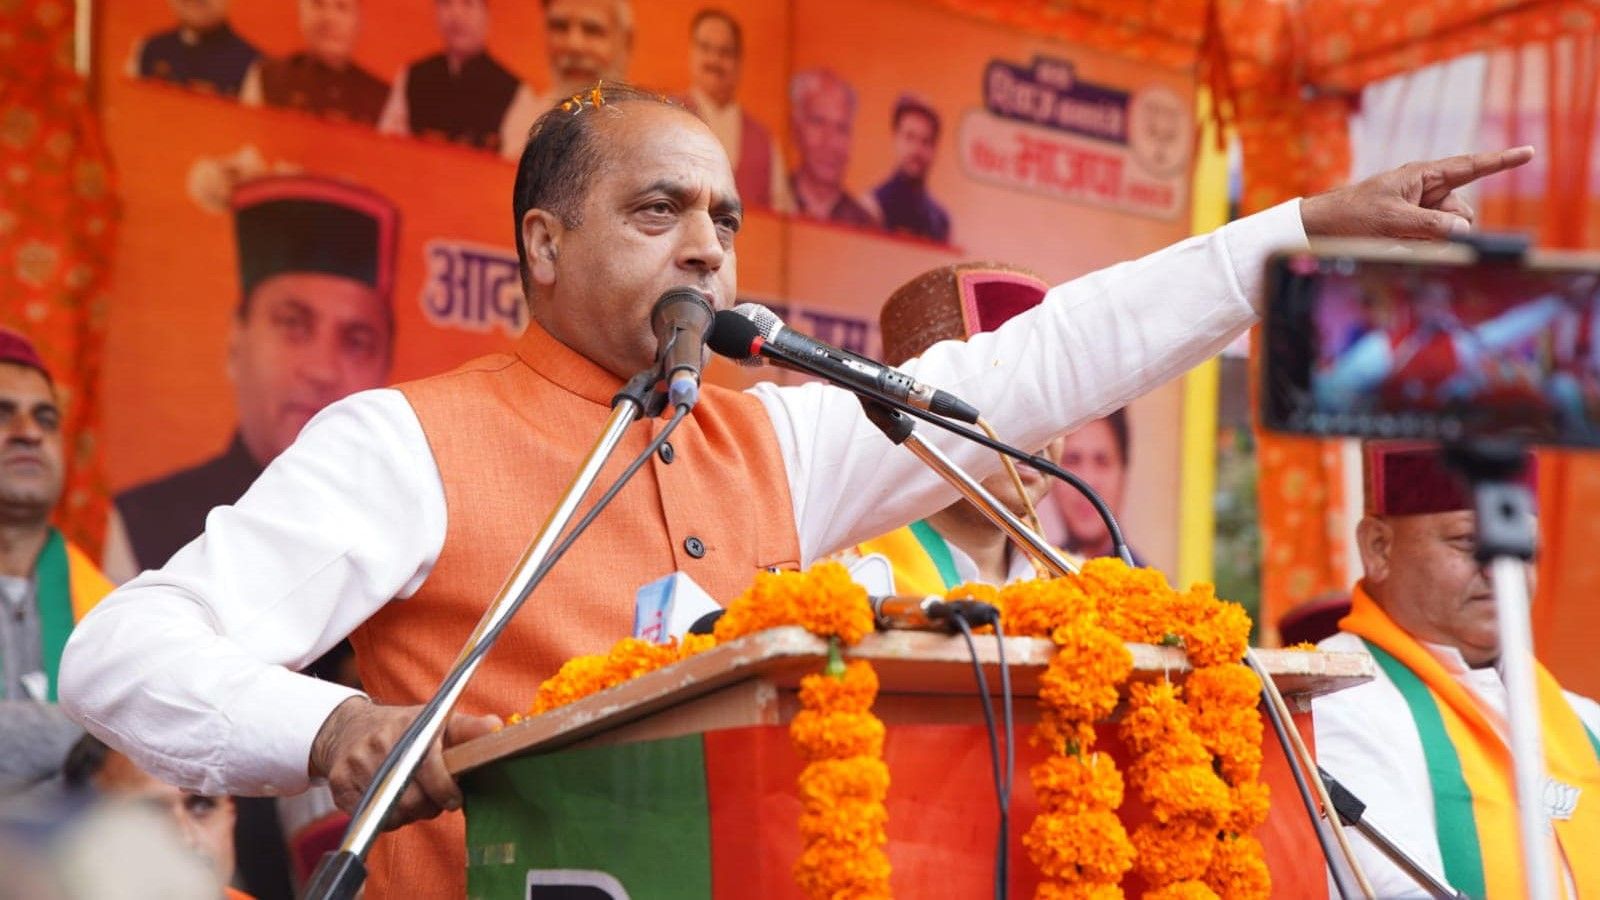 himachal pradesh assembly elections 2022 BJP vs Congress battle - Satya Hindi